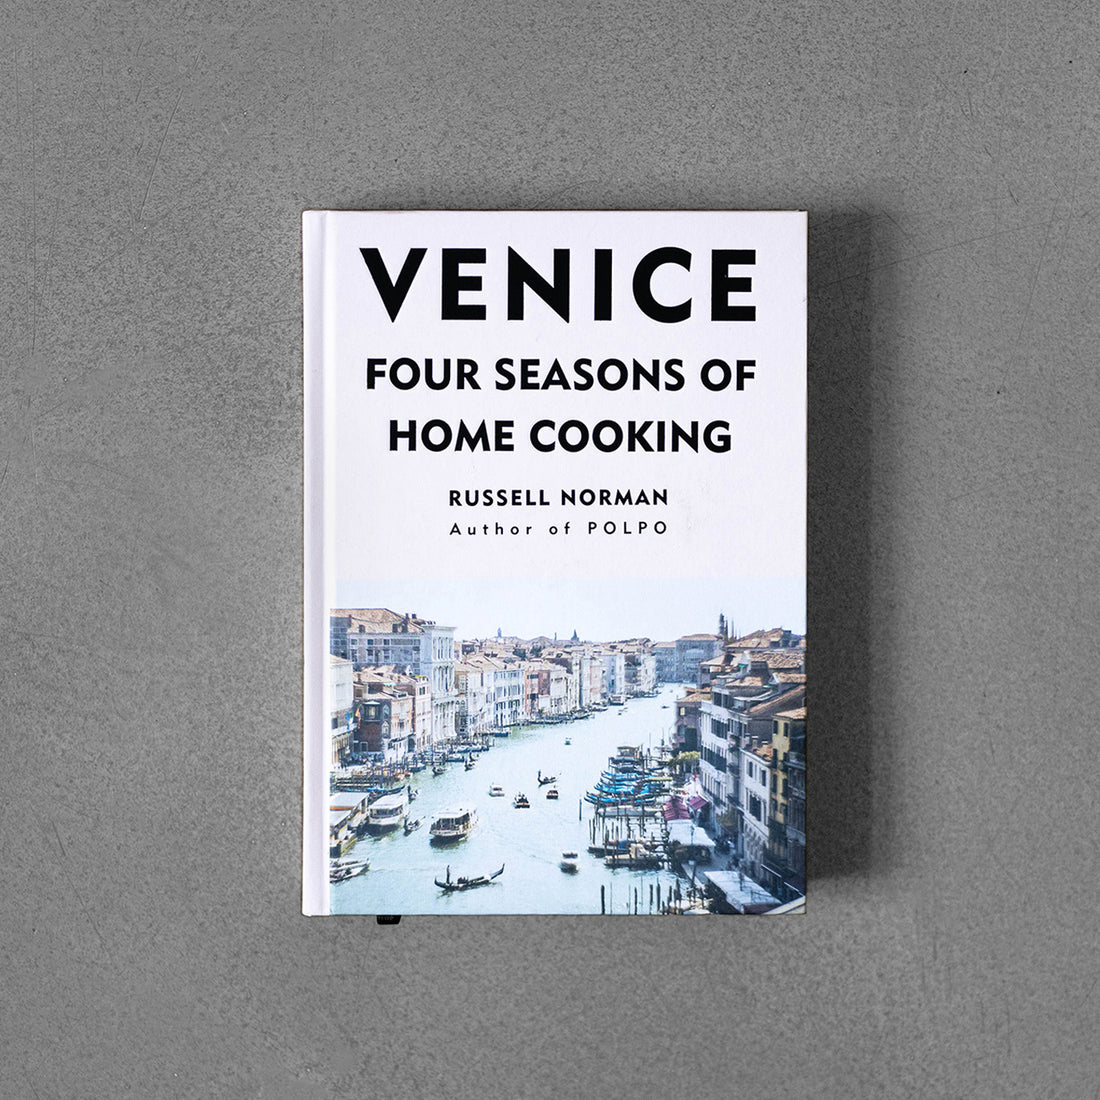 Wenecja: Cztery pory roku domowej kuchni Russella Normana